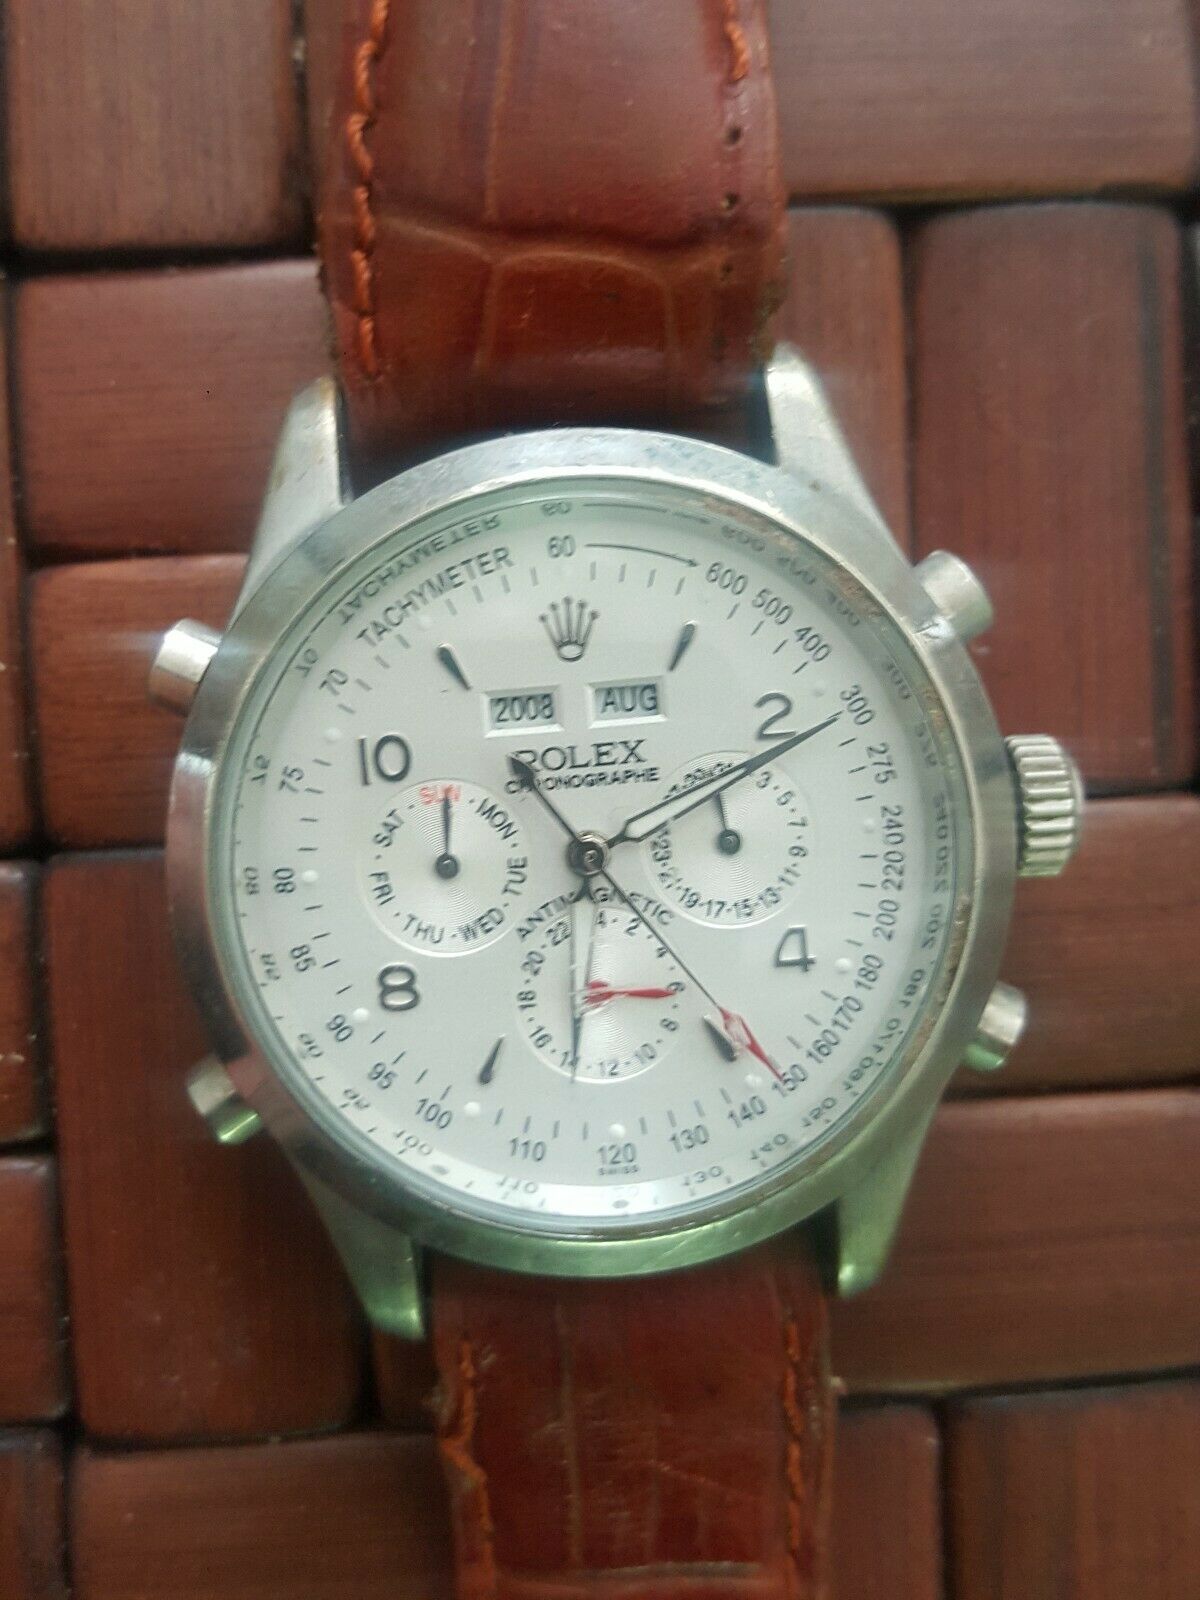 rolex chronographe 6062 price